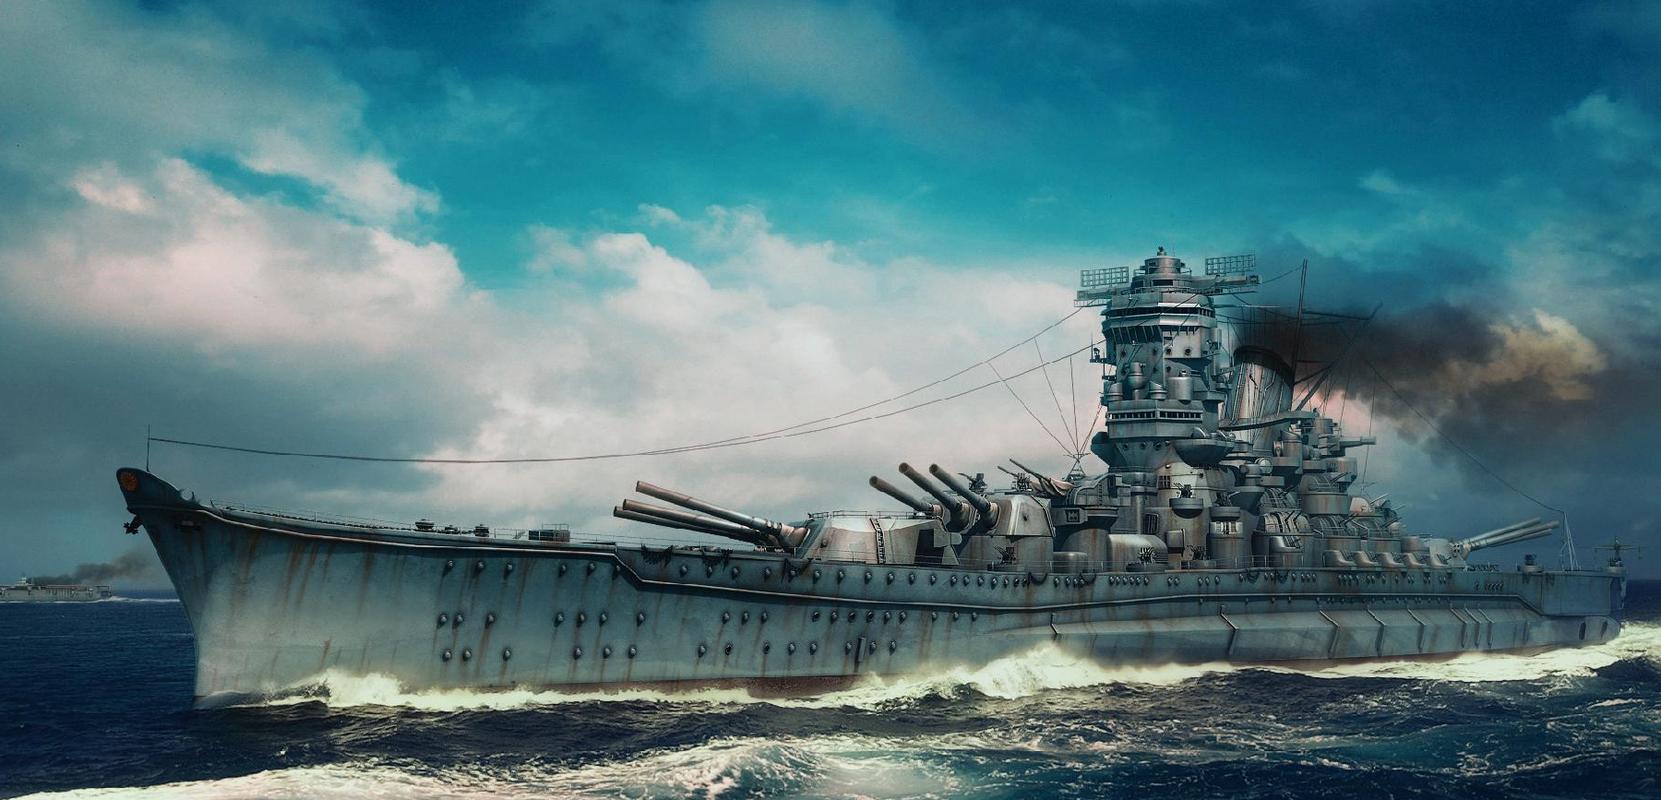 历史最大战列舰——大和号,为何黯然无光地走完了自己的一生?